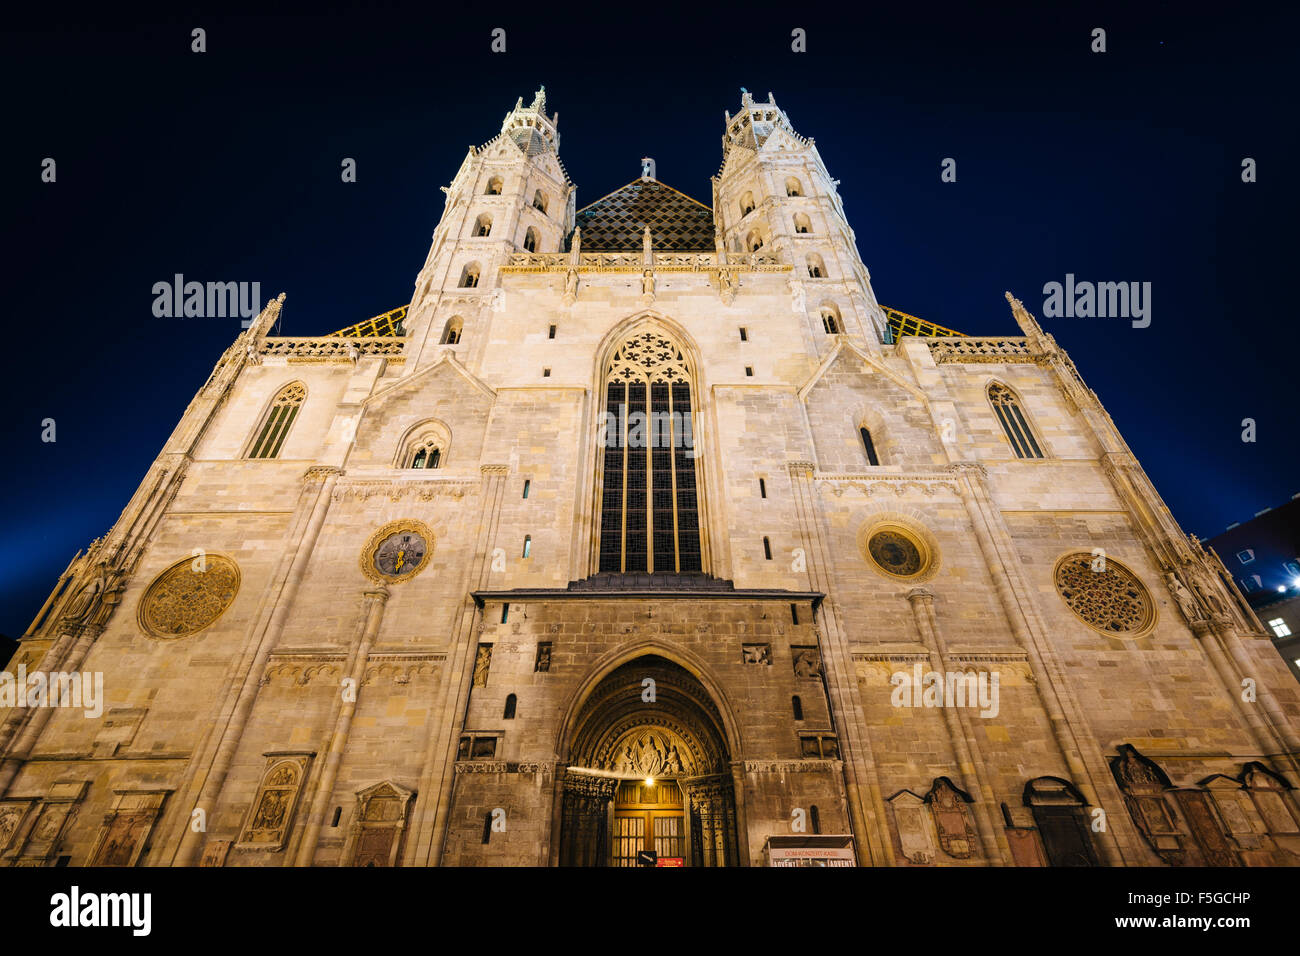 Der Stephansdom in der Nacht, am Stephansplatz in Wien, Österreich. Stockfoto